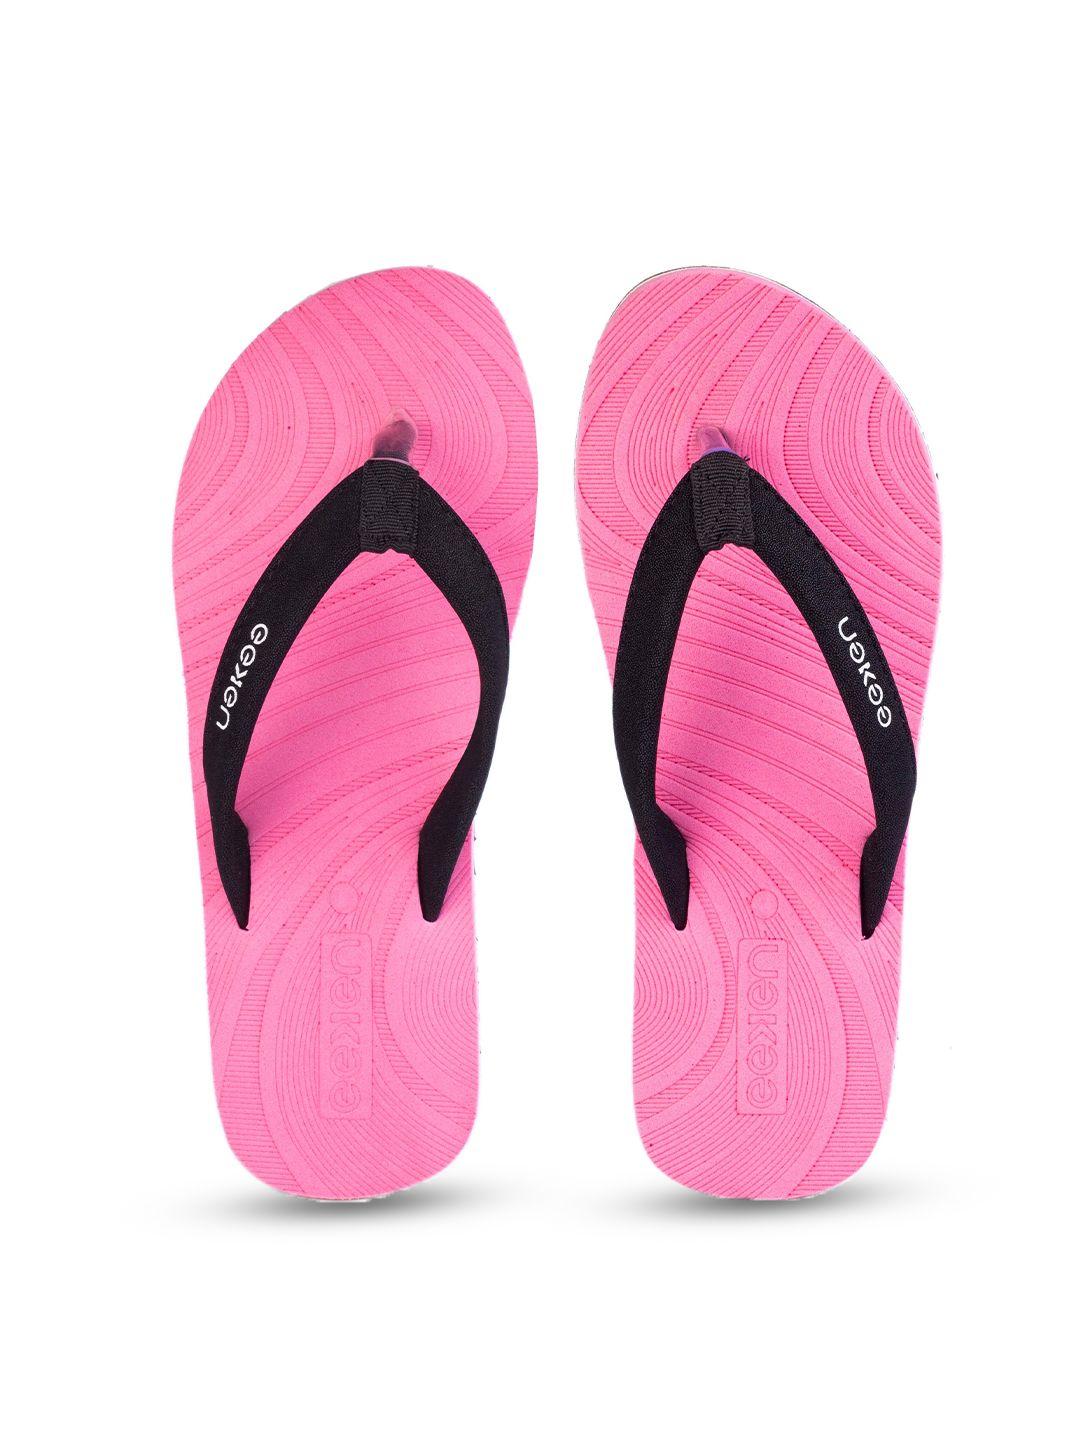 paragon-eeken-women-rubber-anti-skid-lightweight-thong-flip-flops